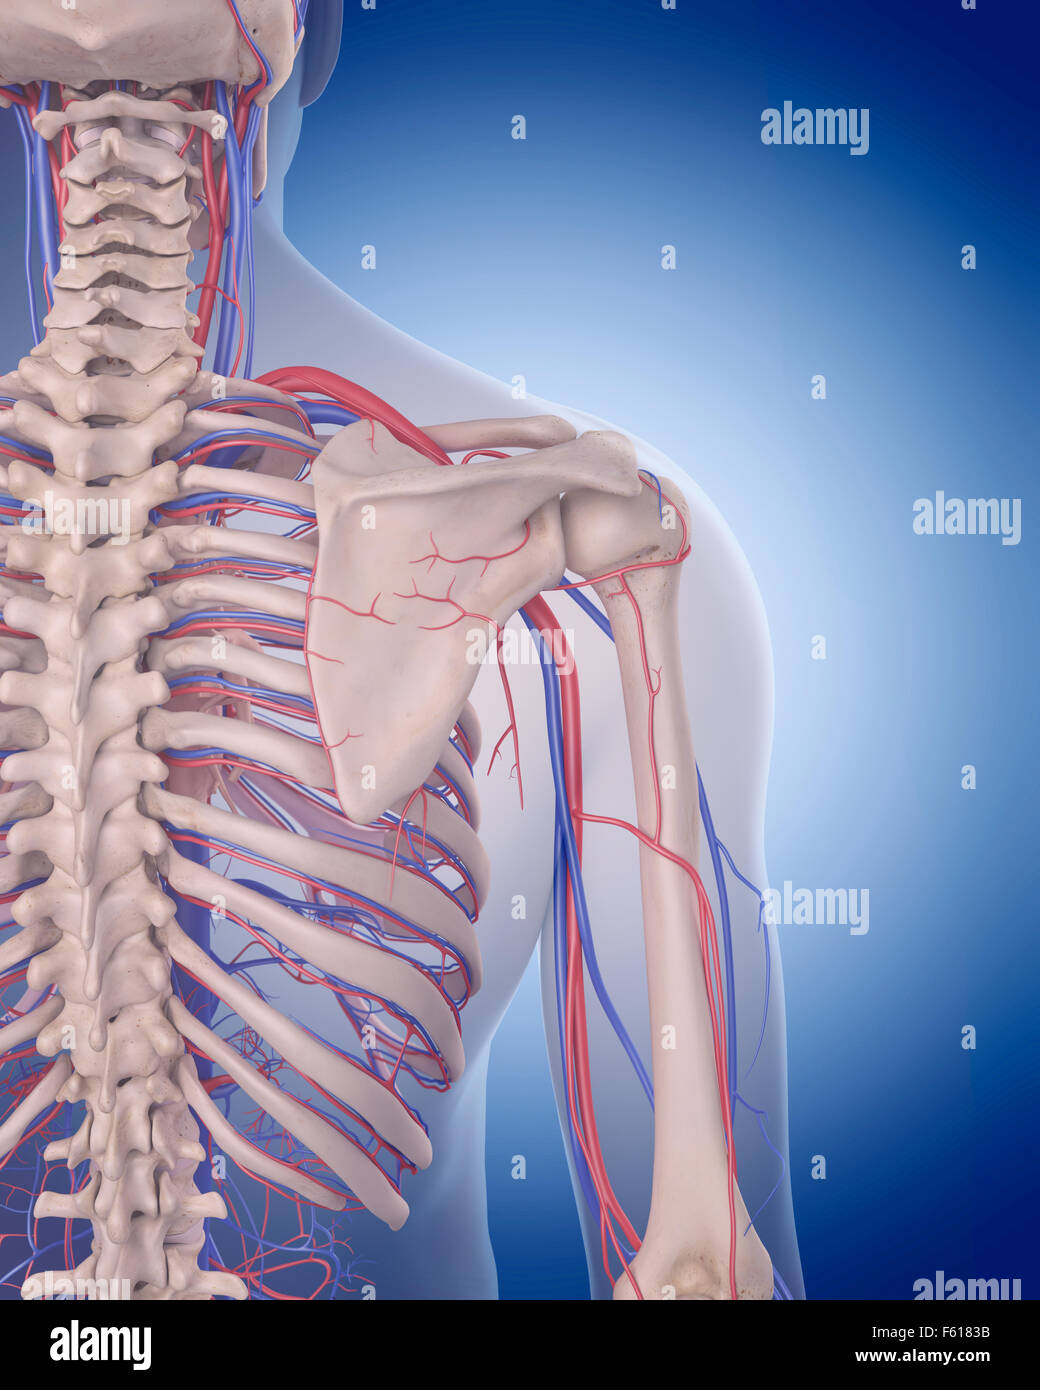 medizinisch genaue Abbildung des Herz-Kreislauf-Systems - Schulter Stockfoto